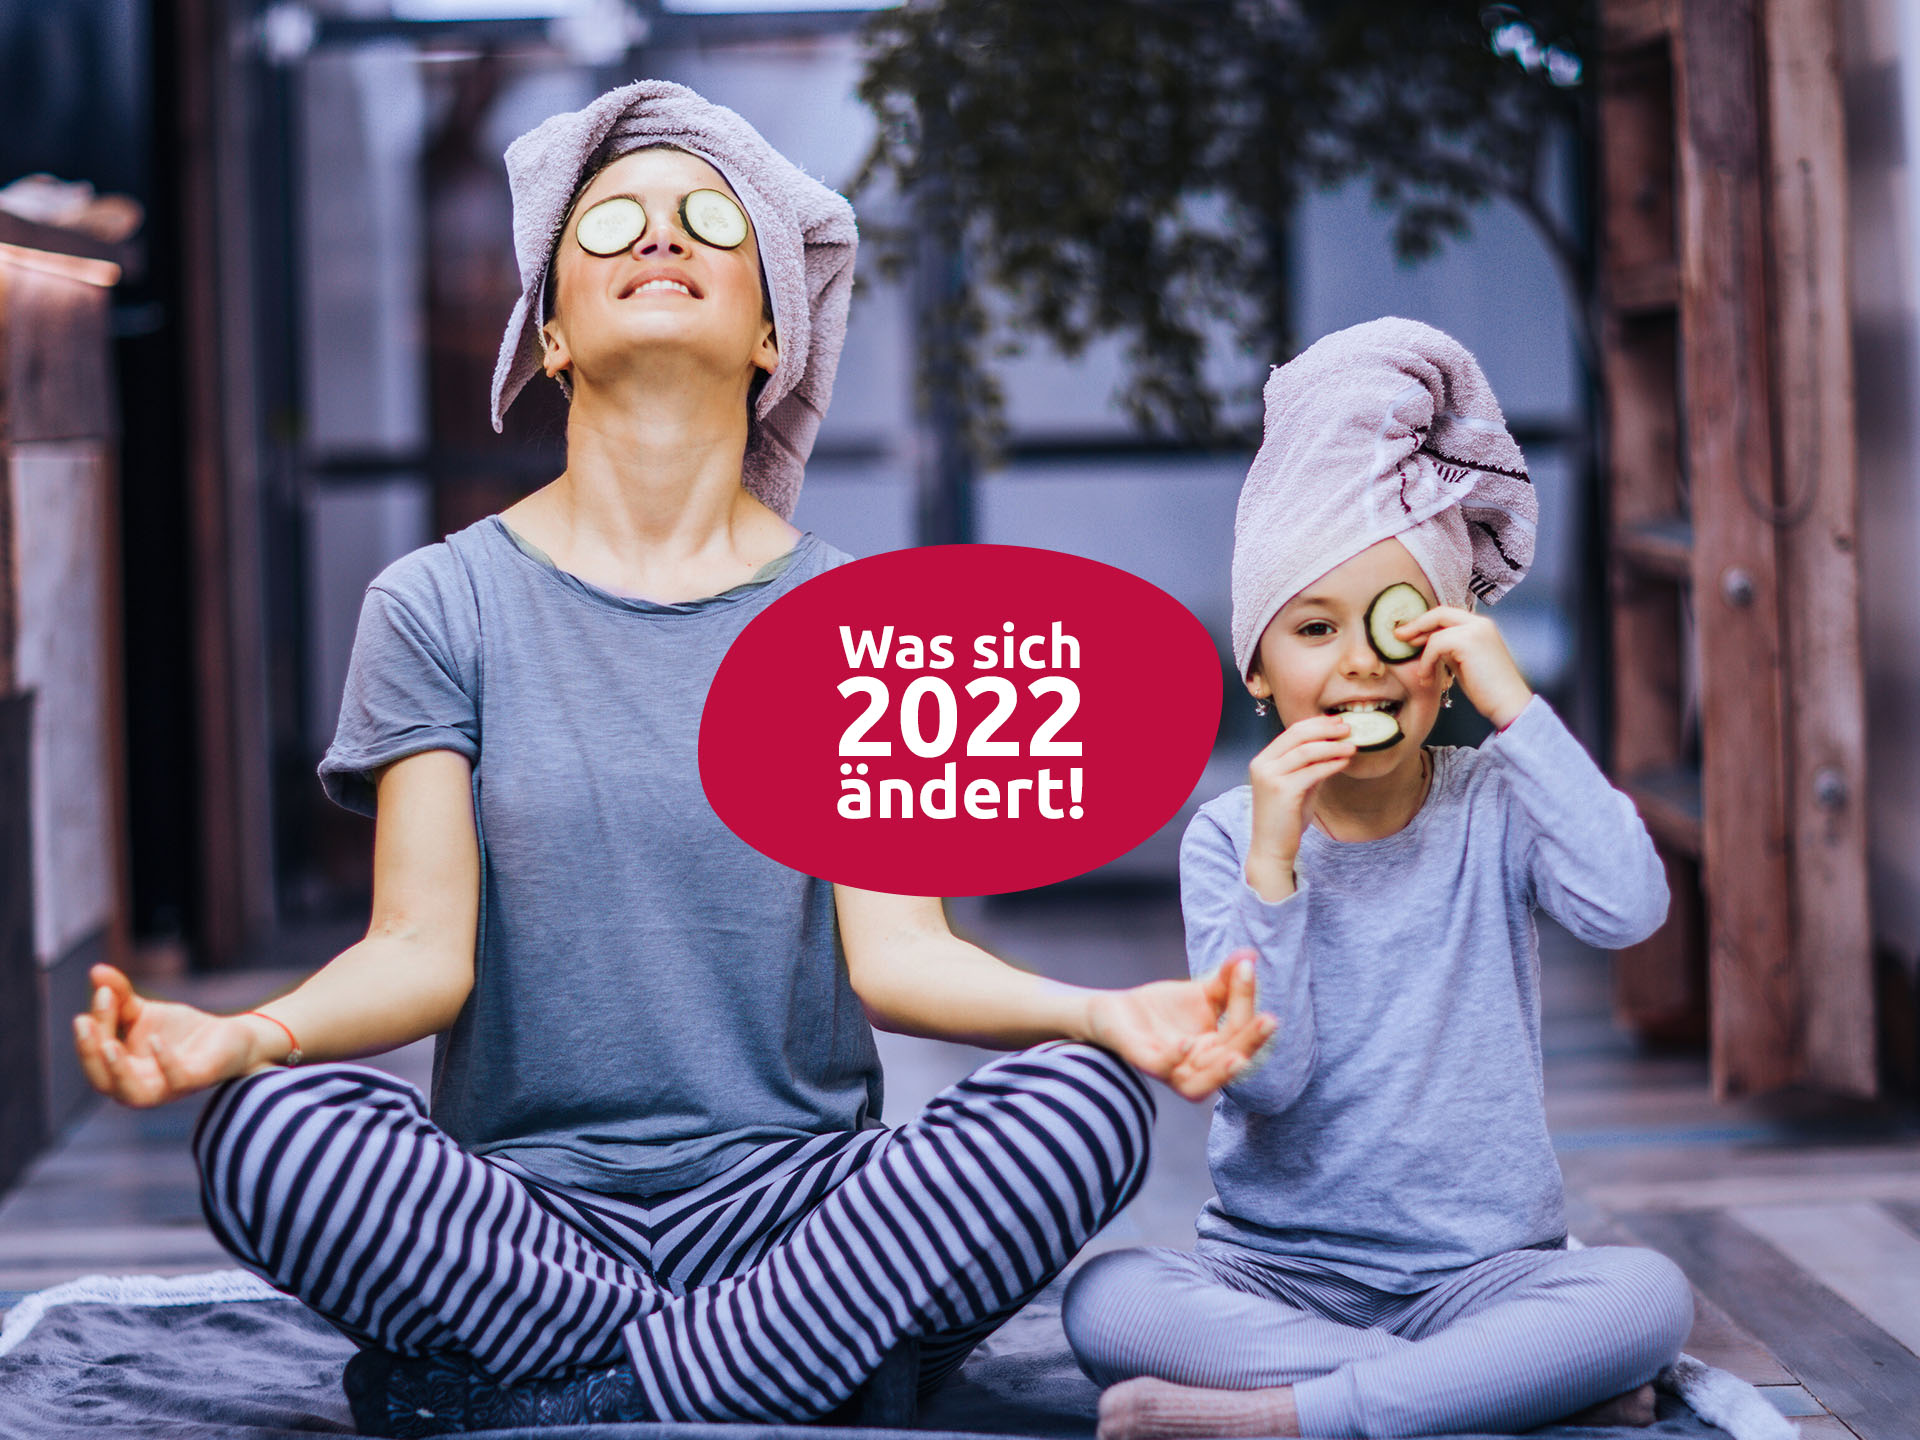 Was sich 2022 beim Thema Gesundheit ändert!